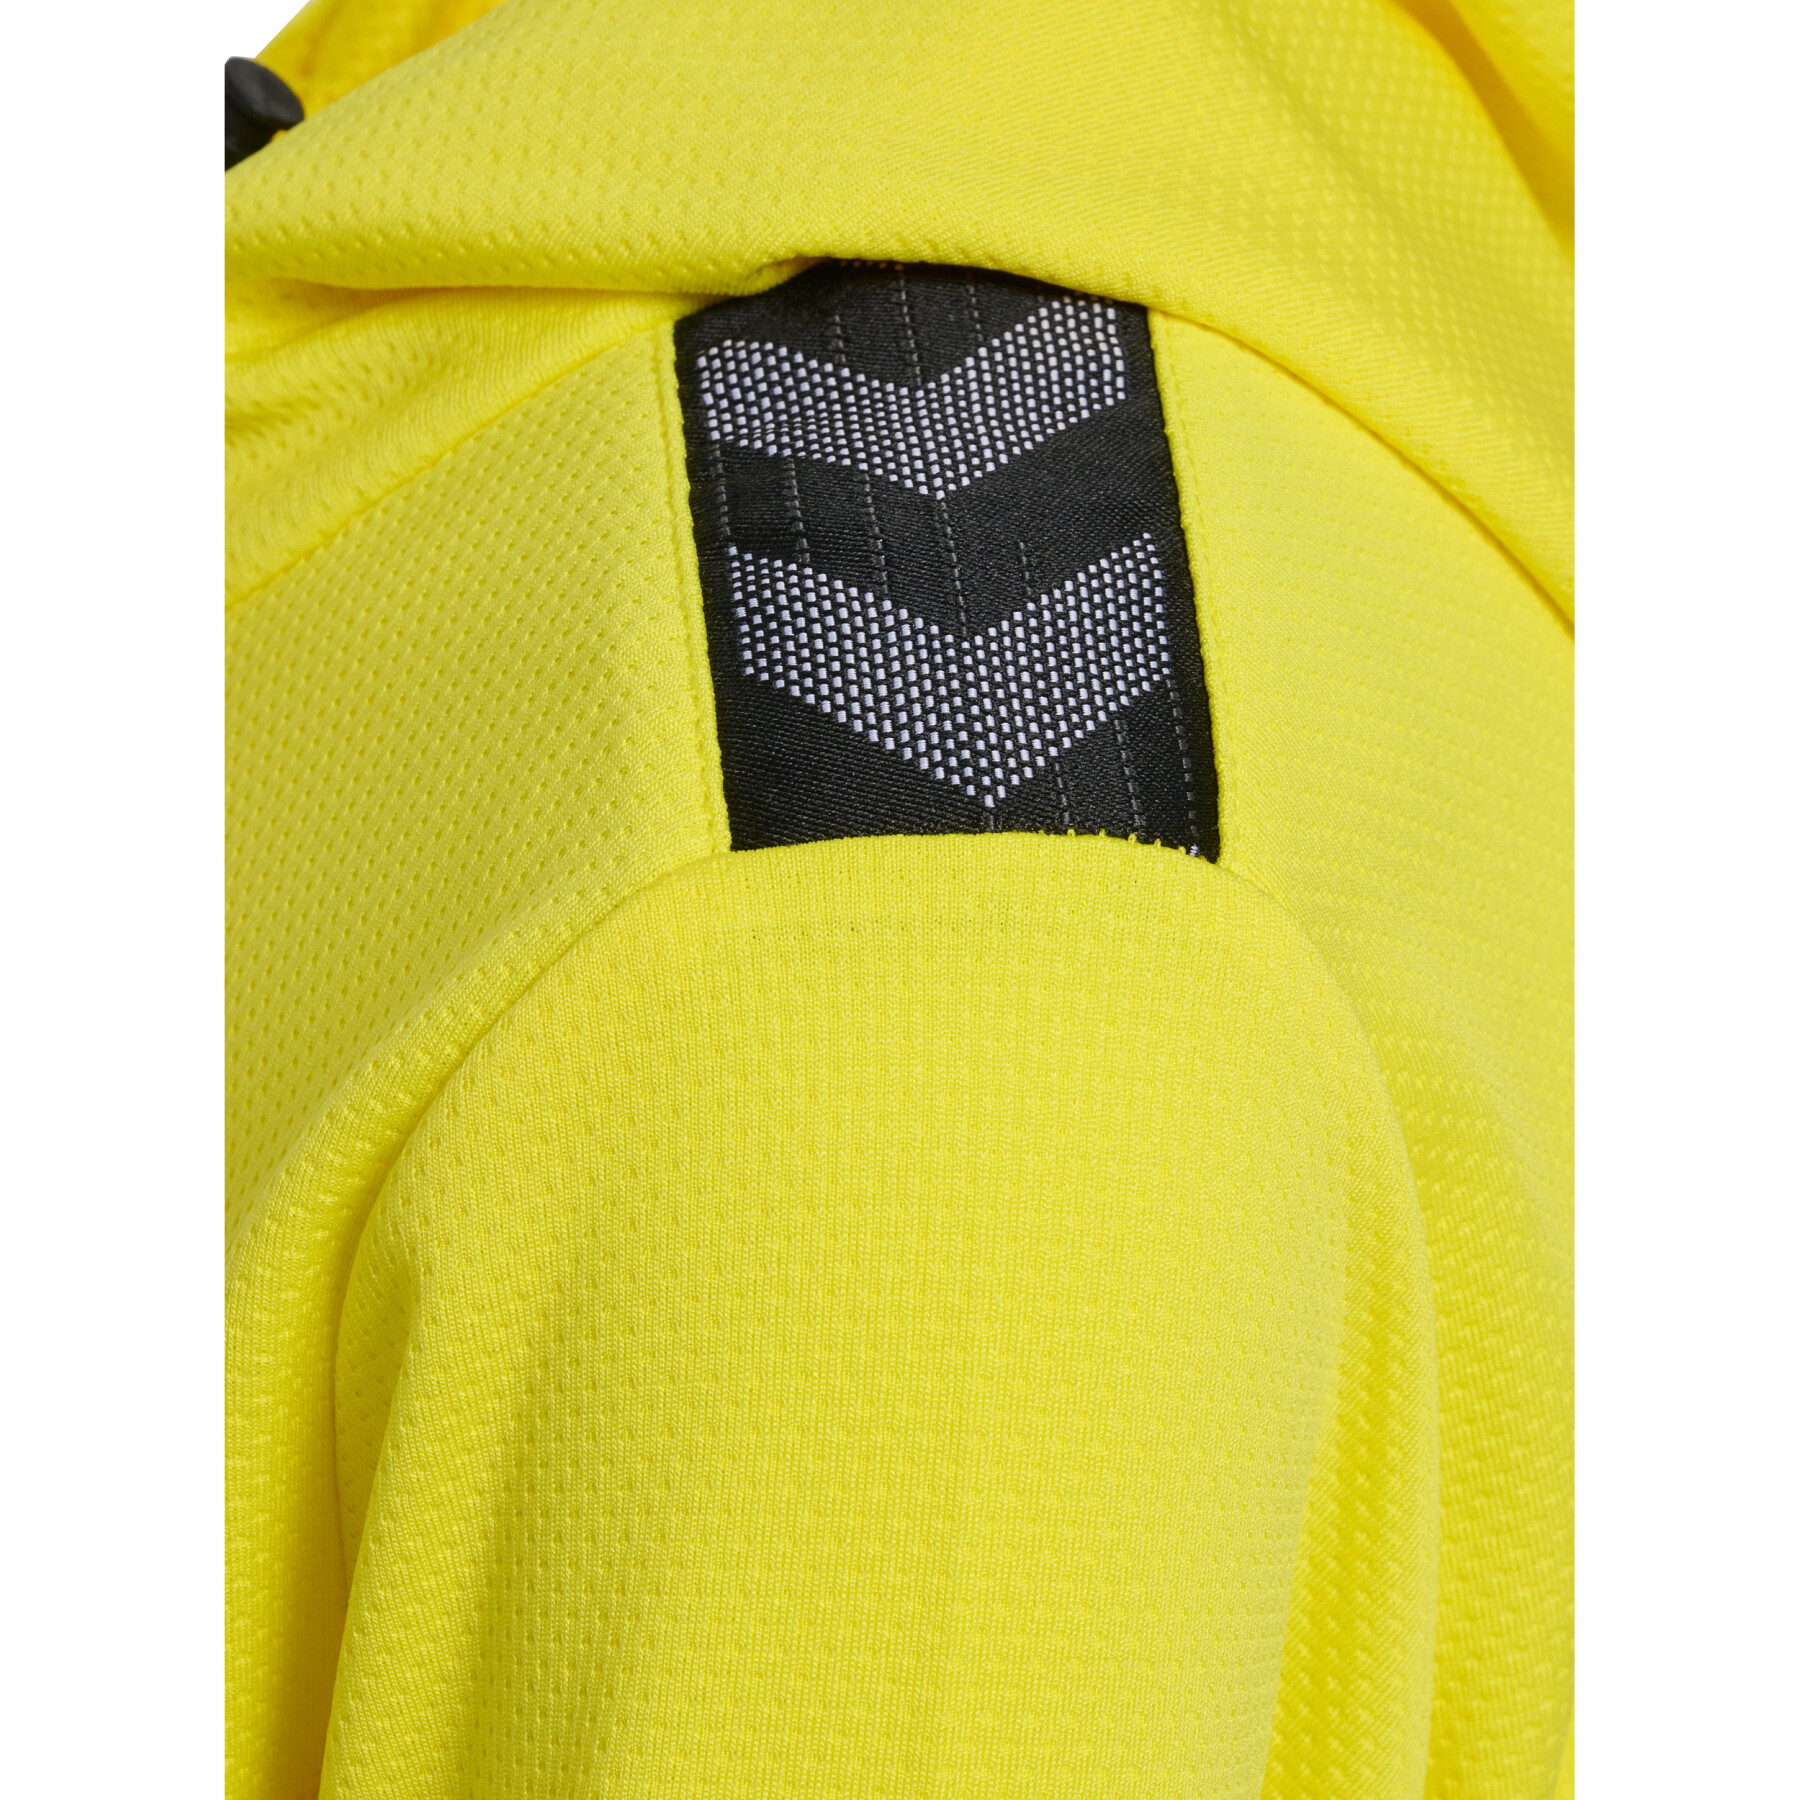 Kinder-Trainingsjacke mit Kapuze und Reißverschluss aus Polyester Hummel Authentic